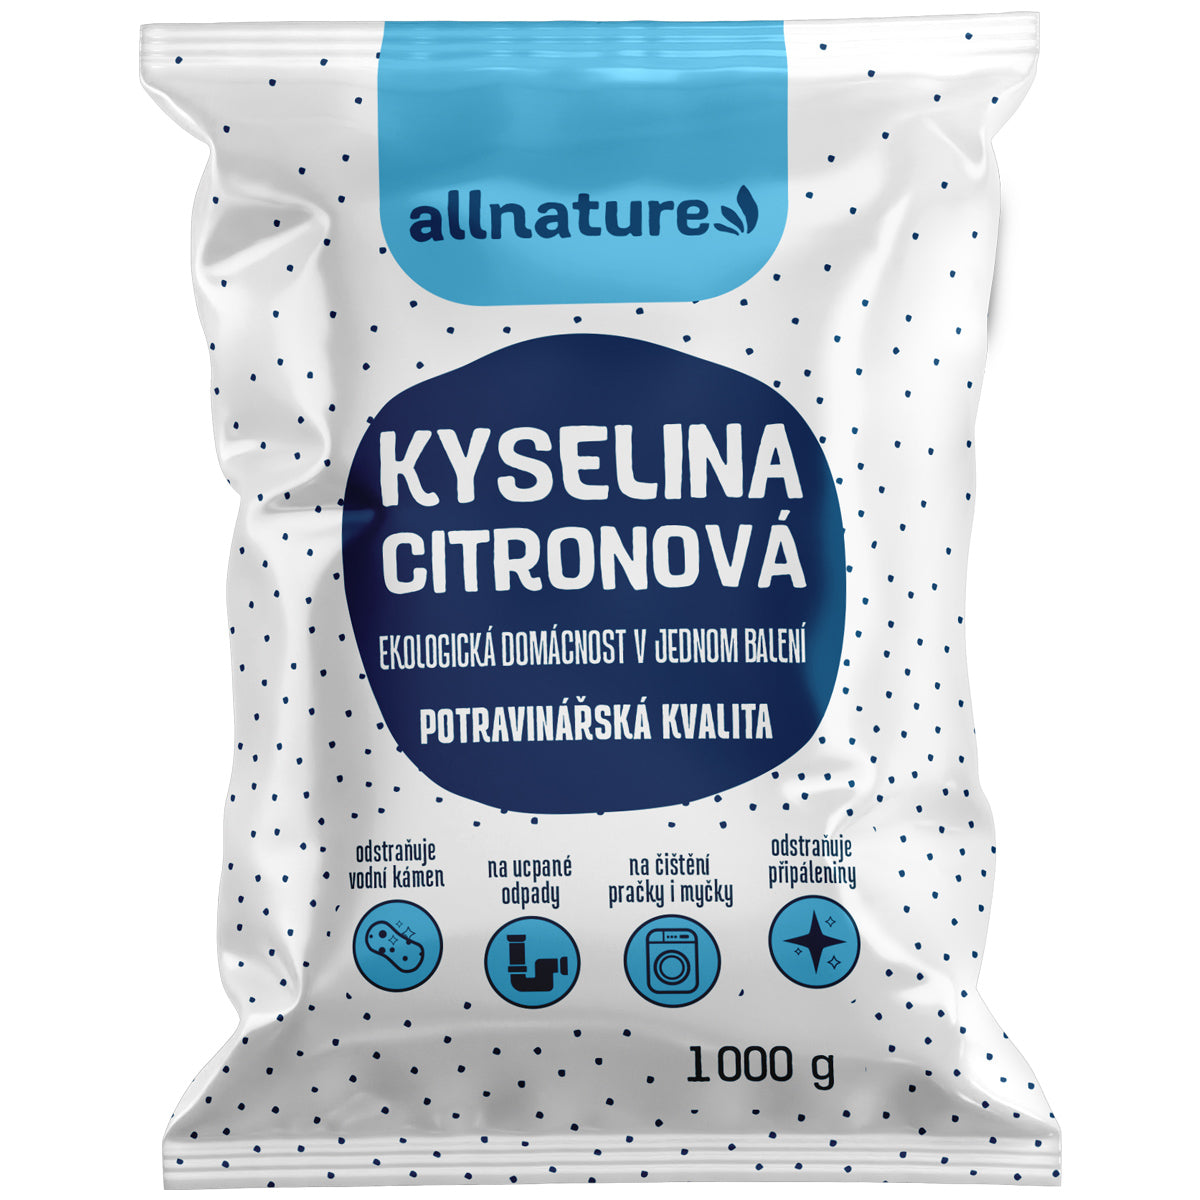 Allnature Kyselina citronová - 1 kg - potravinářská kvalita Allnature